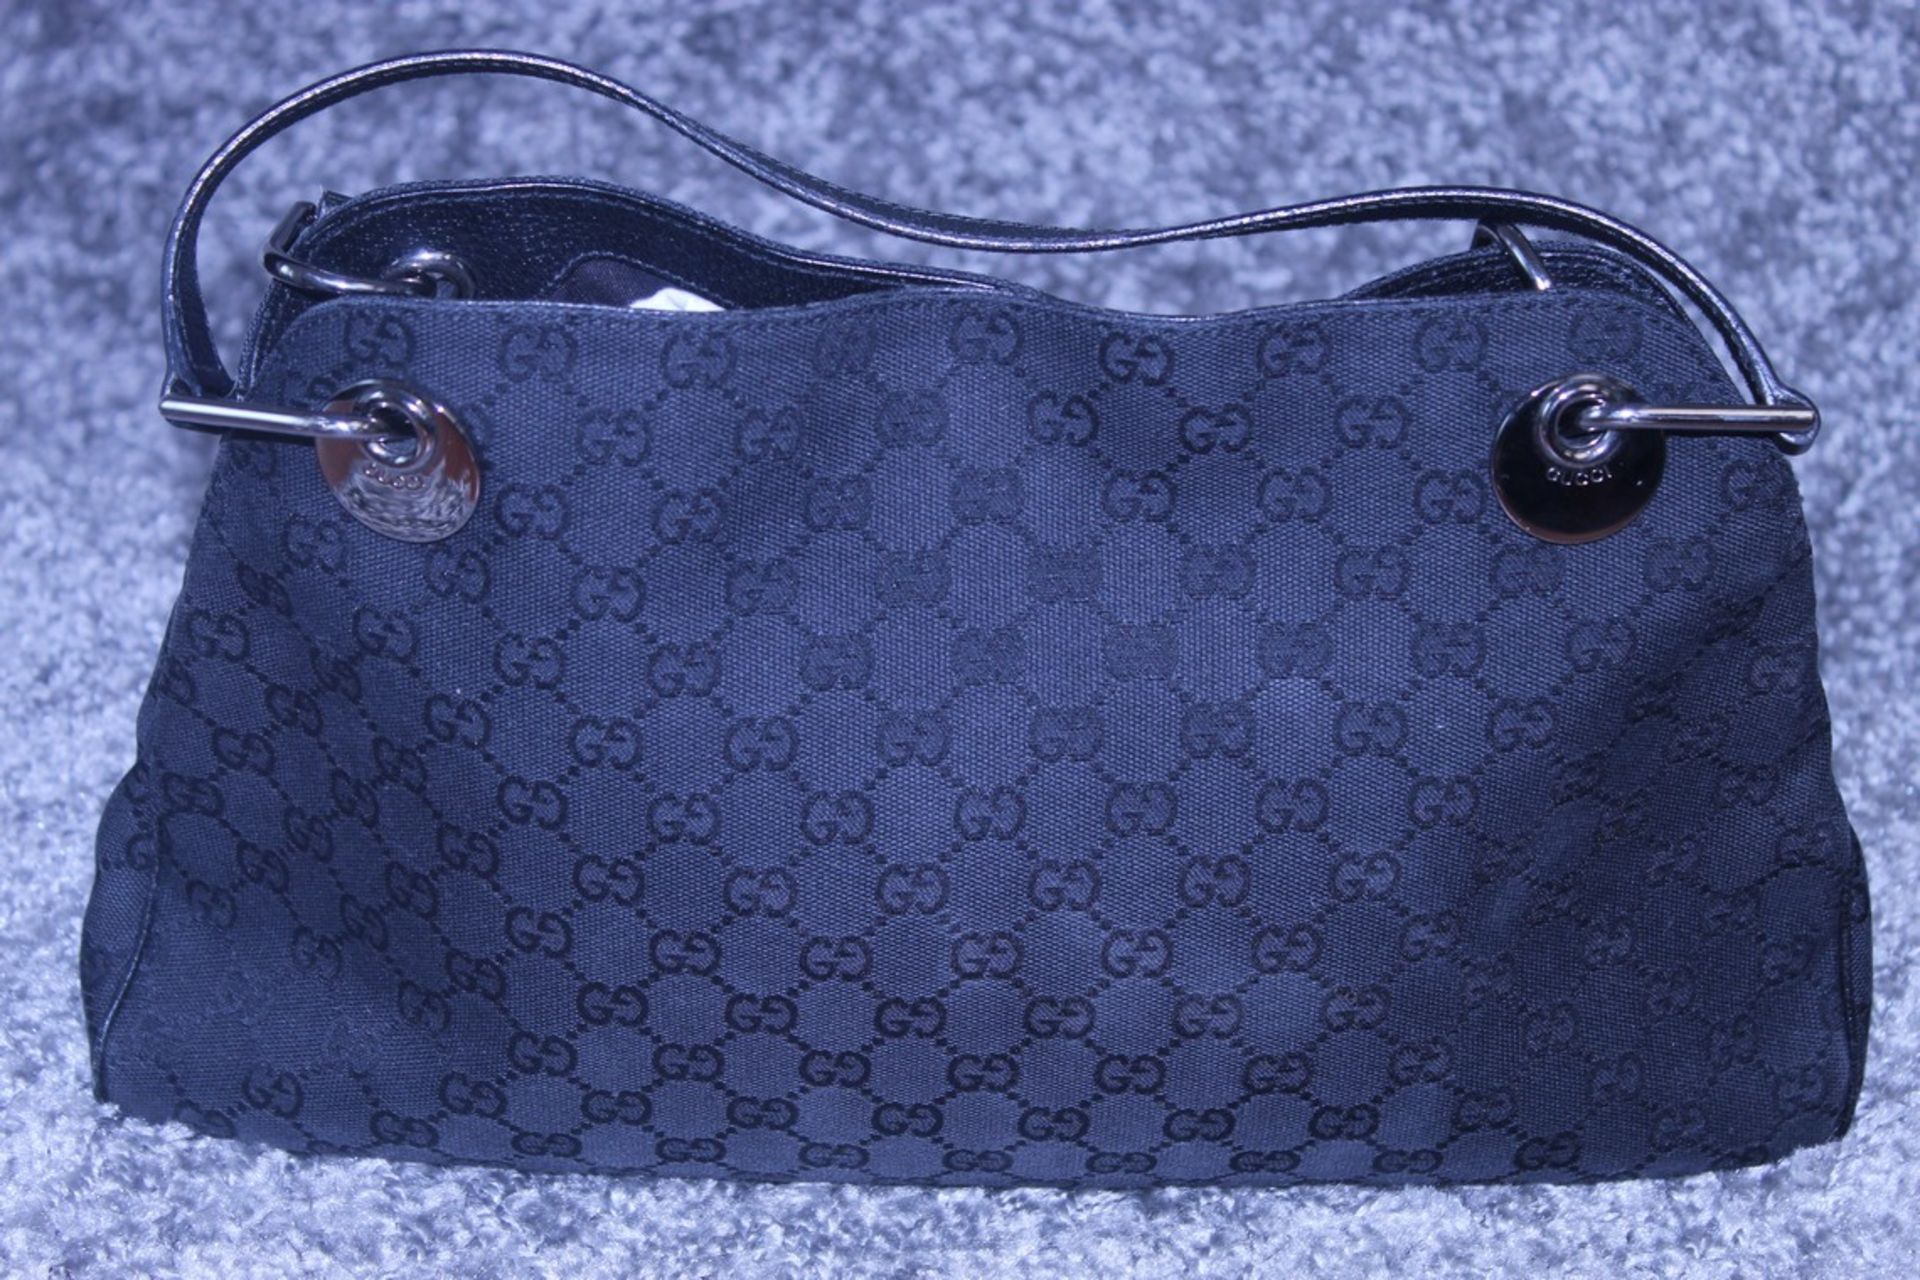 Rrp £1200 Gucci Eclipse Tote Black Leather Ruthenium Black Canvas Leather Monogram Shoulder Bag (